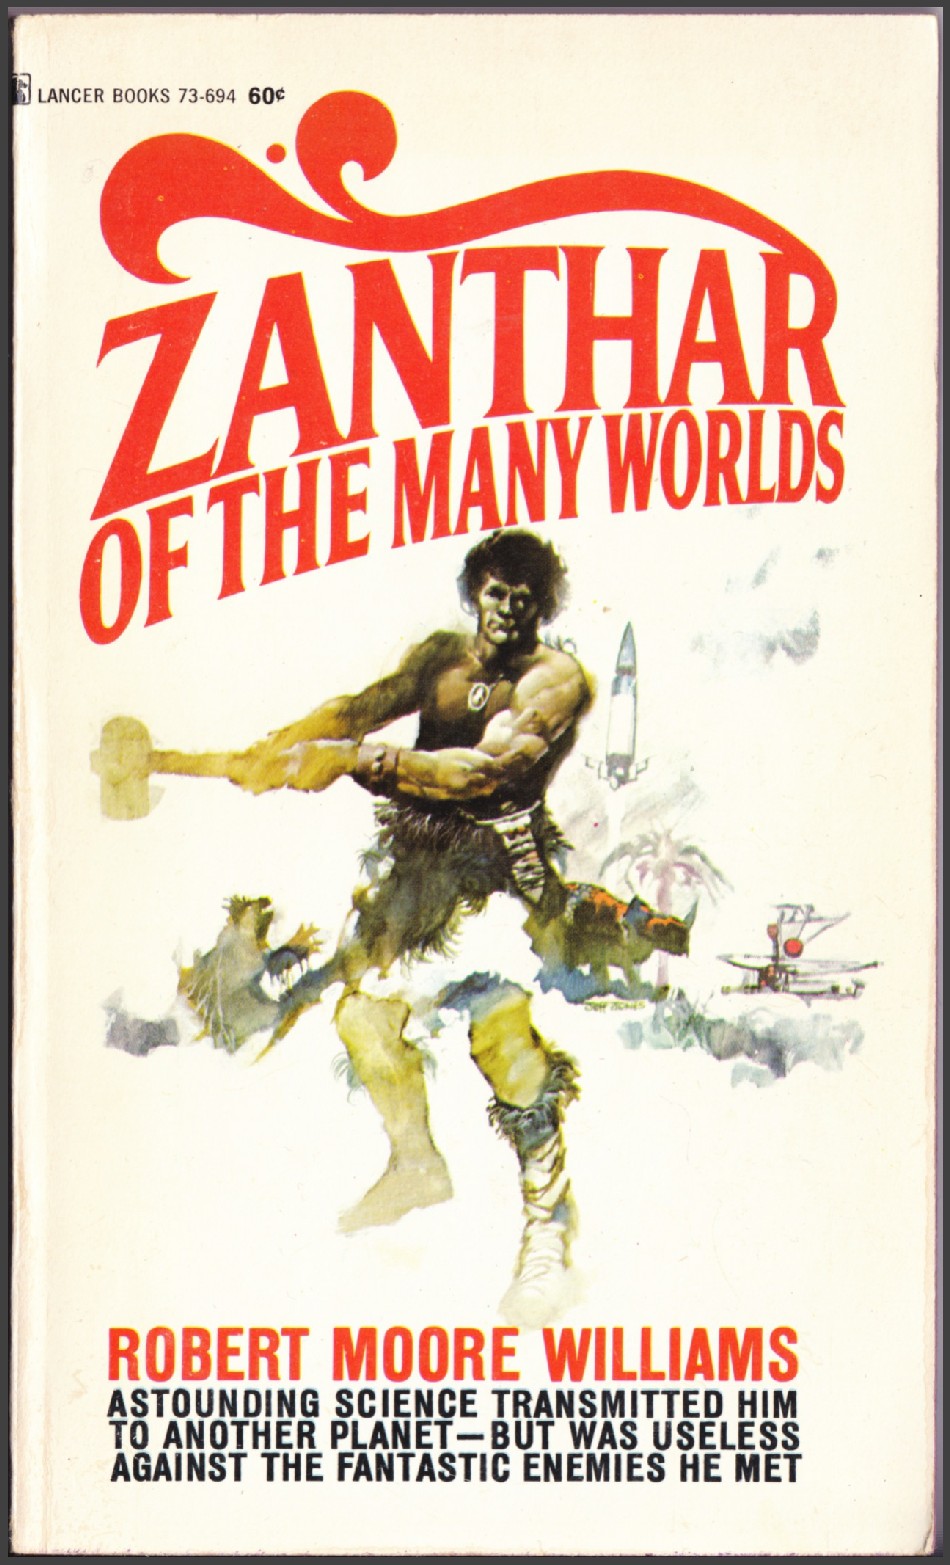 Zanthar Offs Many Worlds